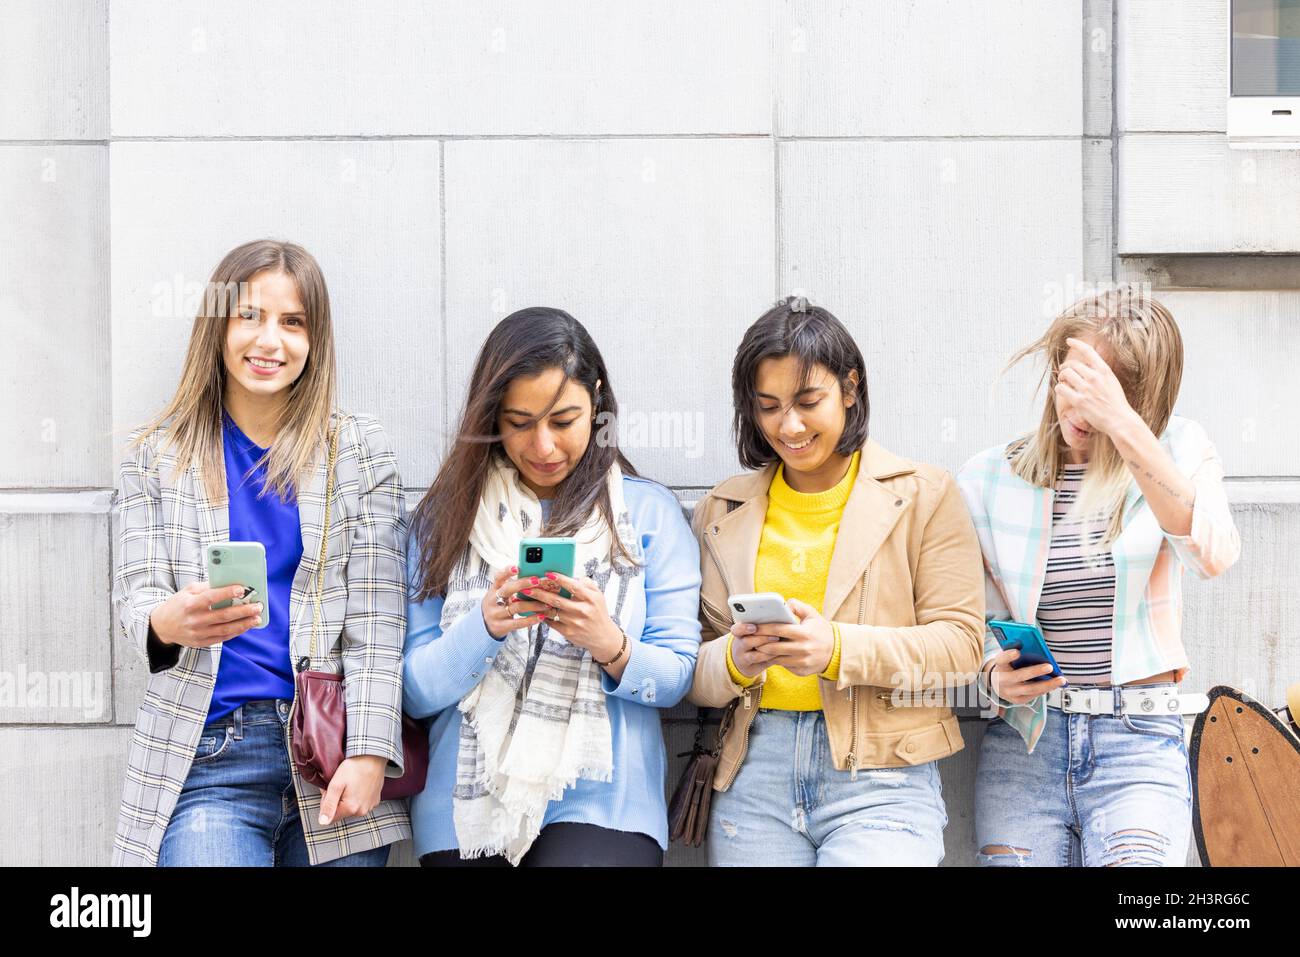 Multiethnische Gruppe von schönen jungen Freundinnen, die mit mobilen Smartphones an einer Wand stehen Stockfoto